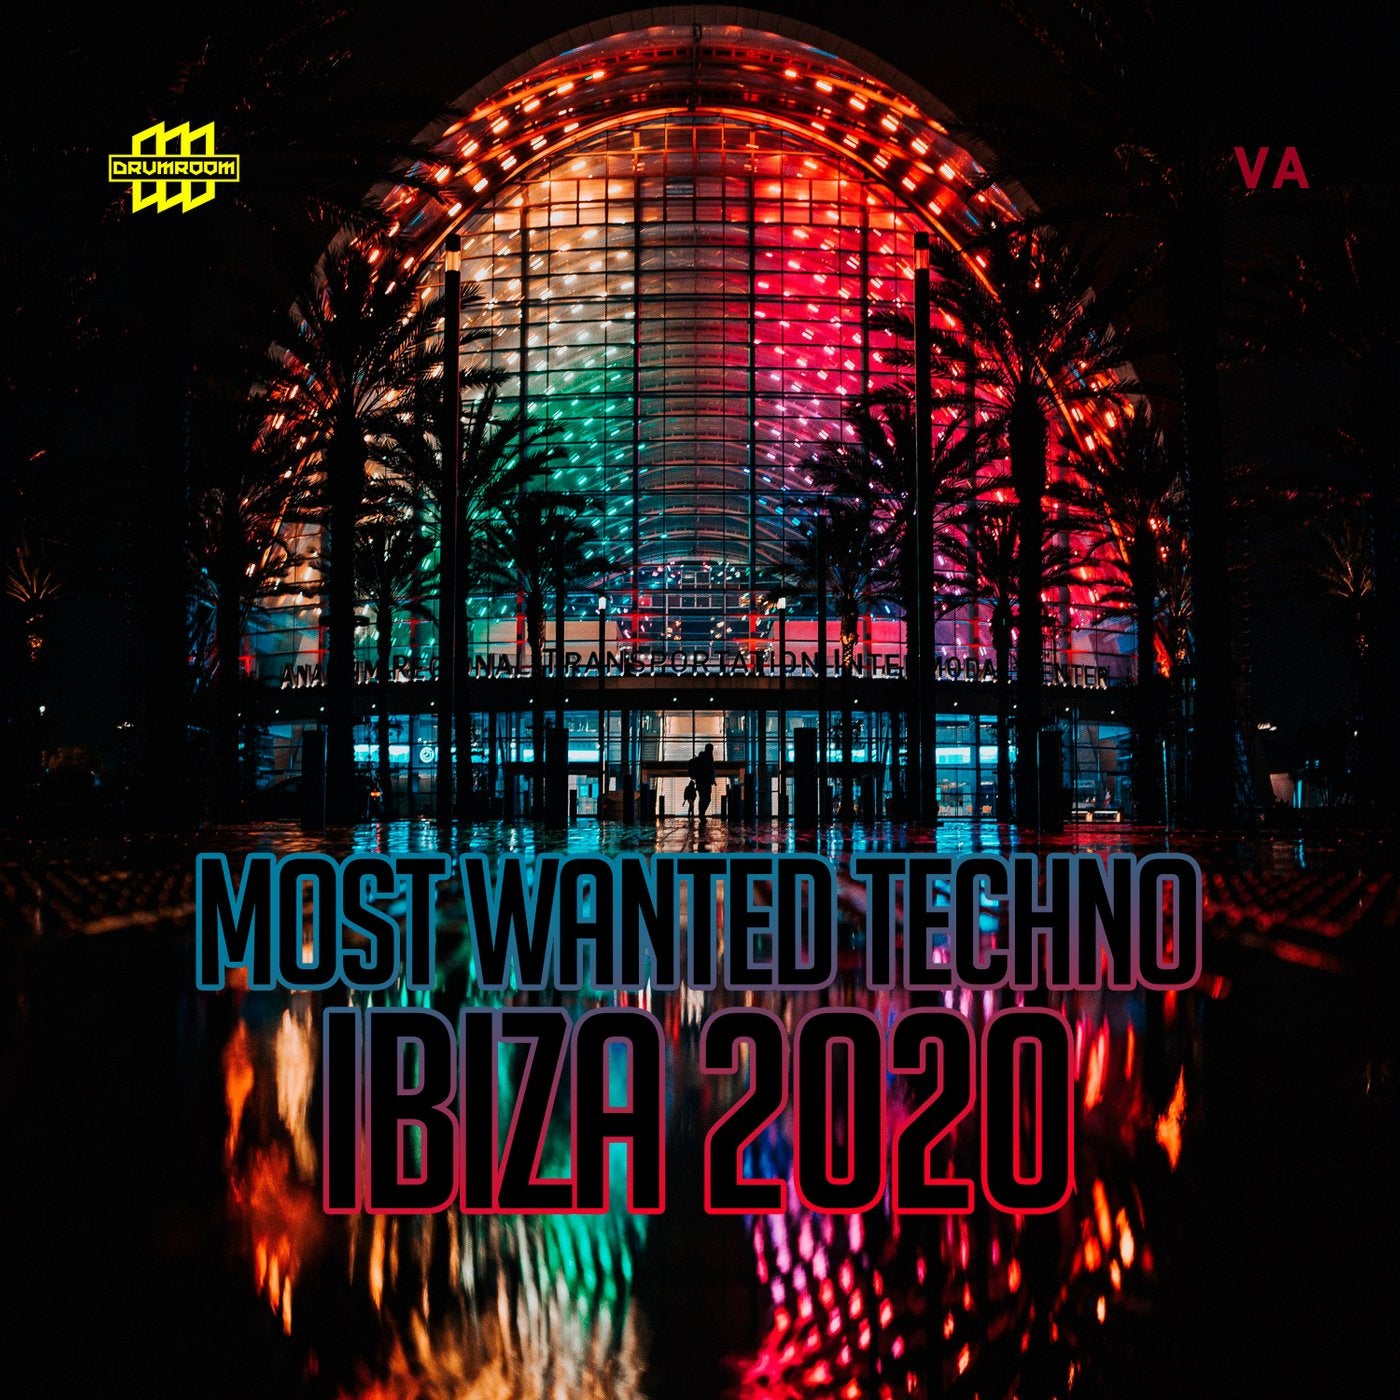 Most Wanted Techno -  Ibiza 2020